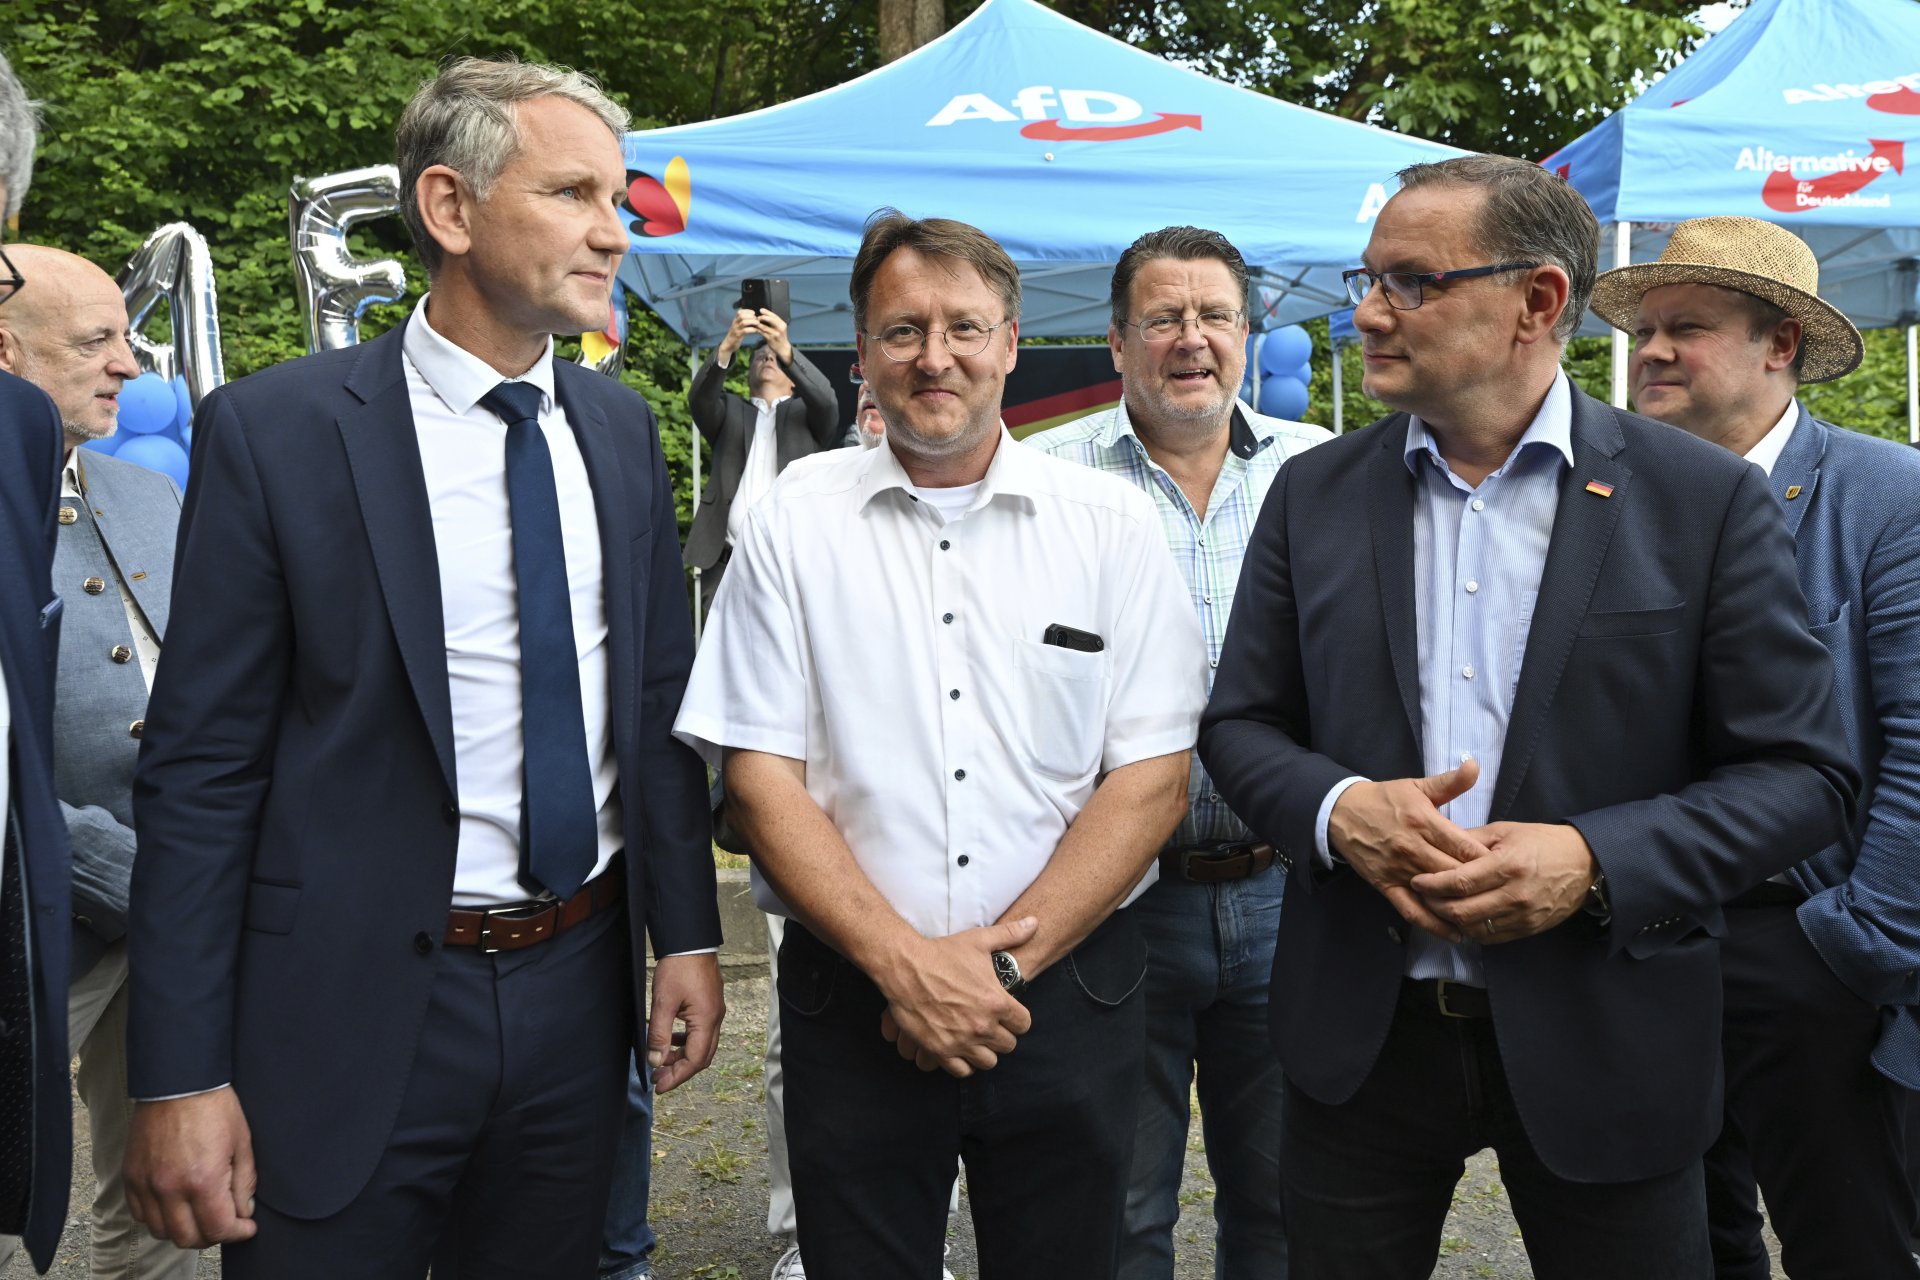 Лидери на "Алтернатива за Германия" на партийна проява в Зоненберг на 25 юни: Бьорн Хоке (вляво), Роберт Зеселман до него, Стефан Бранднер (третият отляво) и Тино Хрупала 